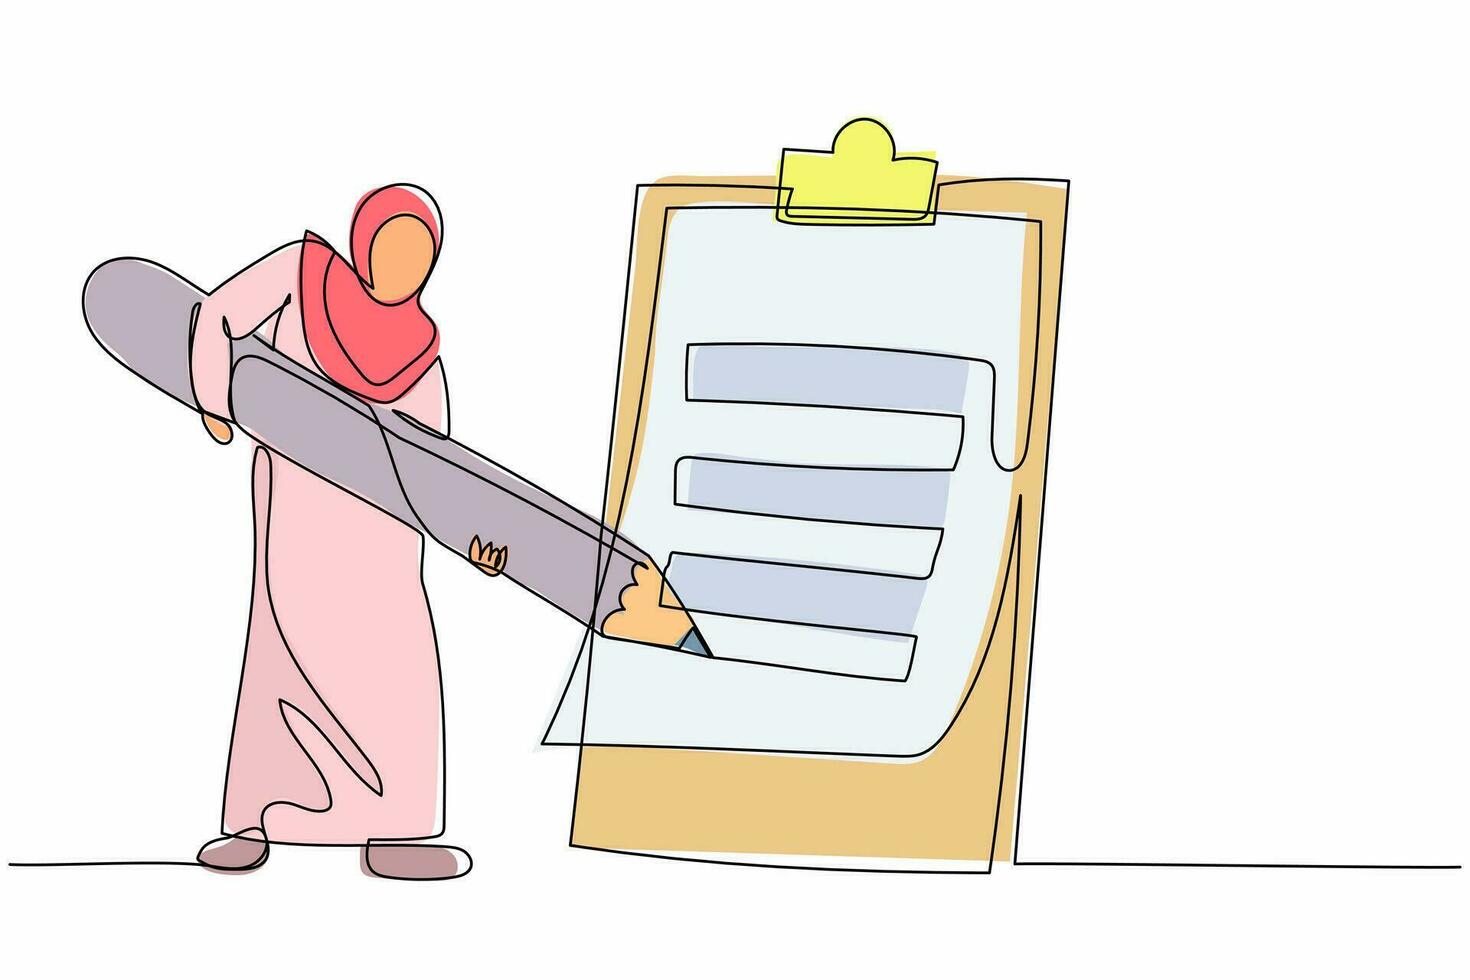 kontinuerlig ett linje teckning arab affärskvinna mark checklista med penna. arbetstagare komplettering frågeformulär uppgift. mål prestation planera schema. enda linje dra design vektor grafisk illustration